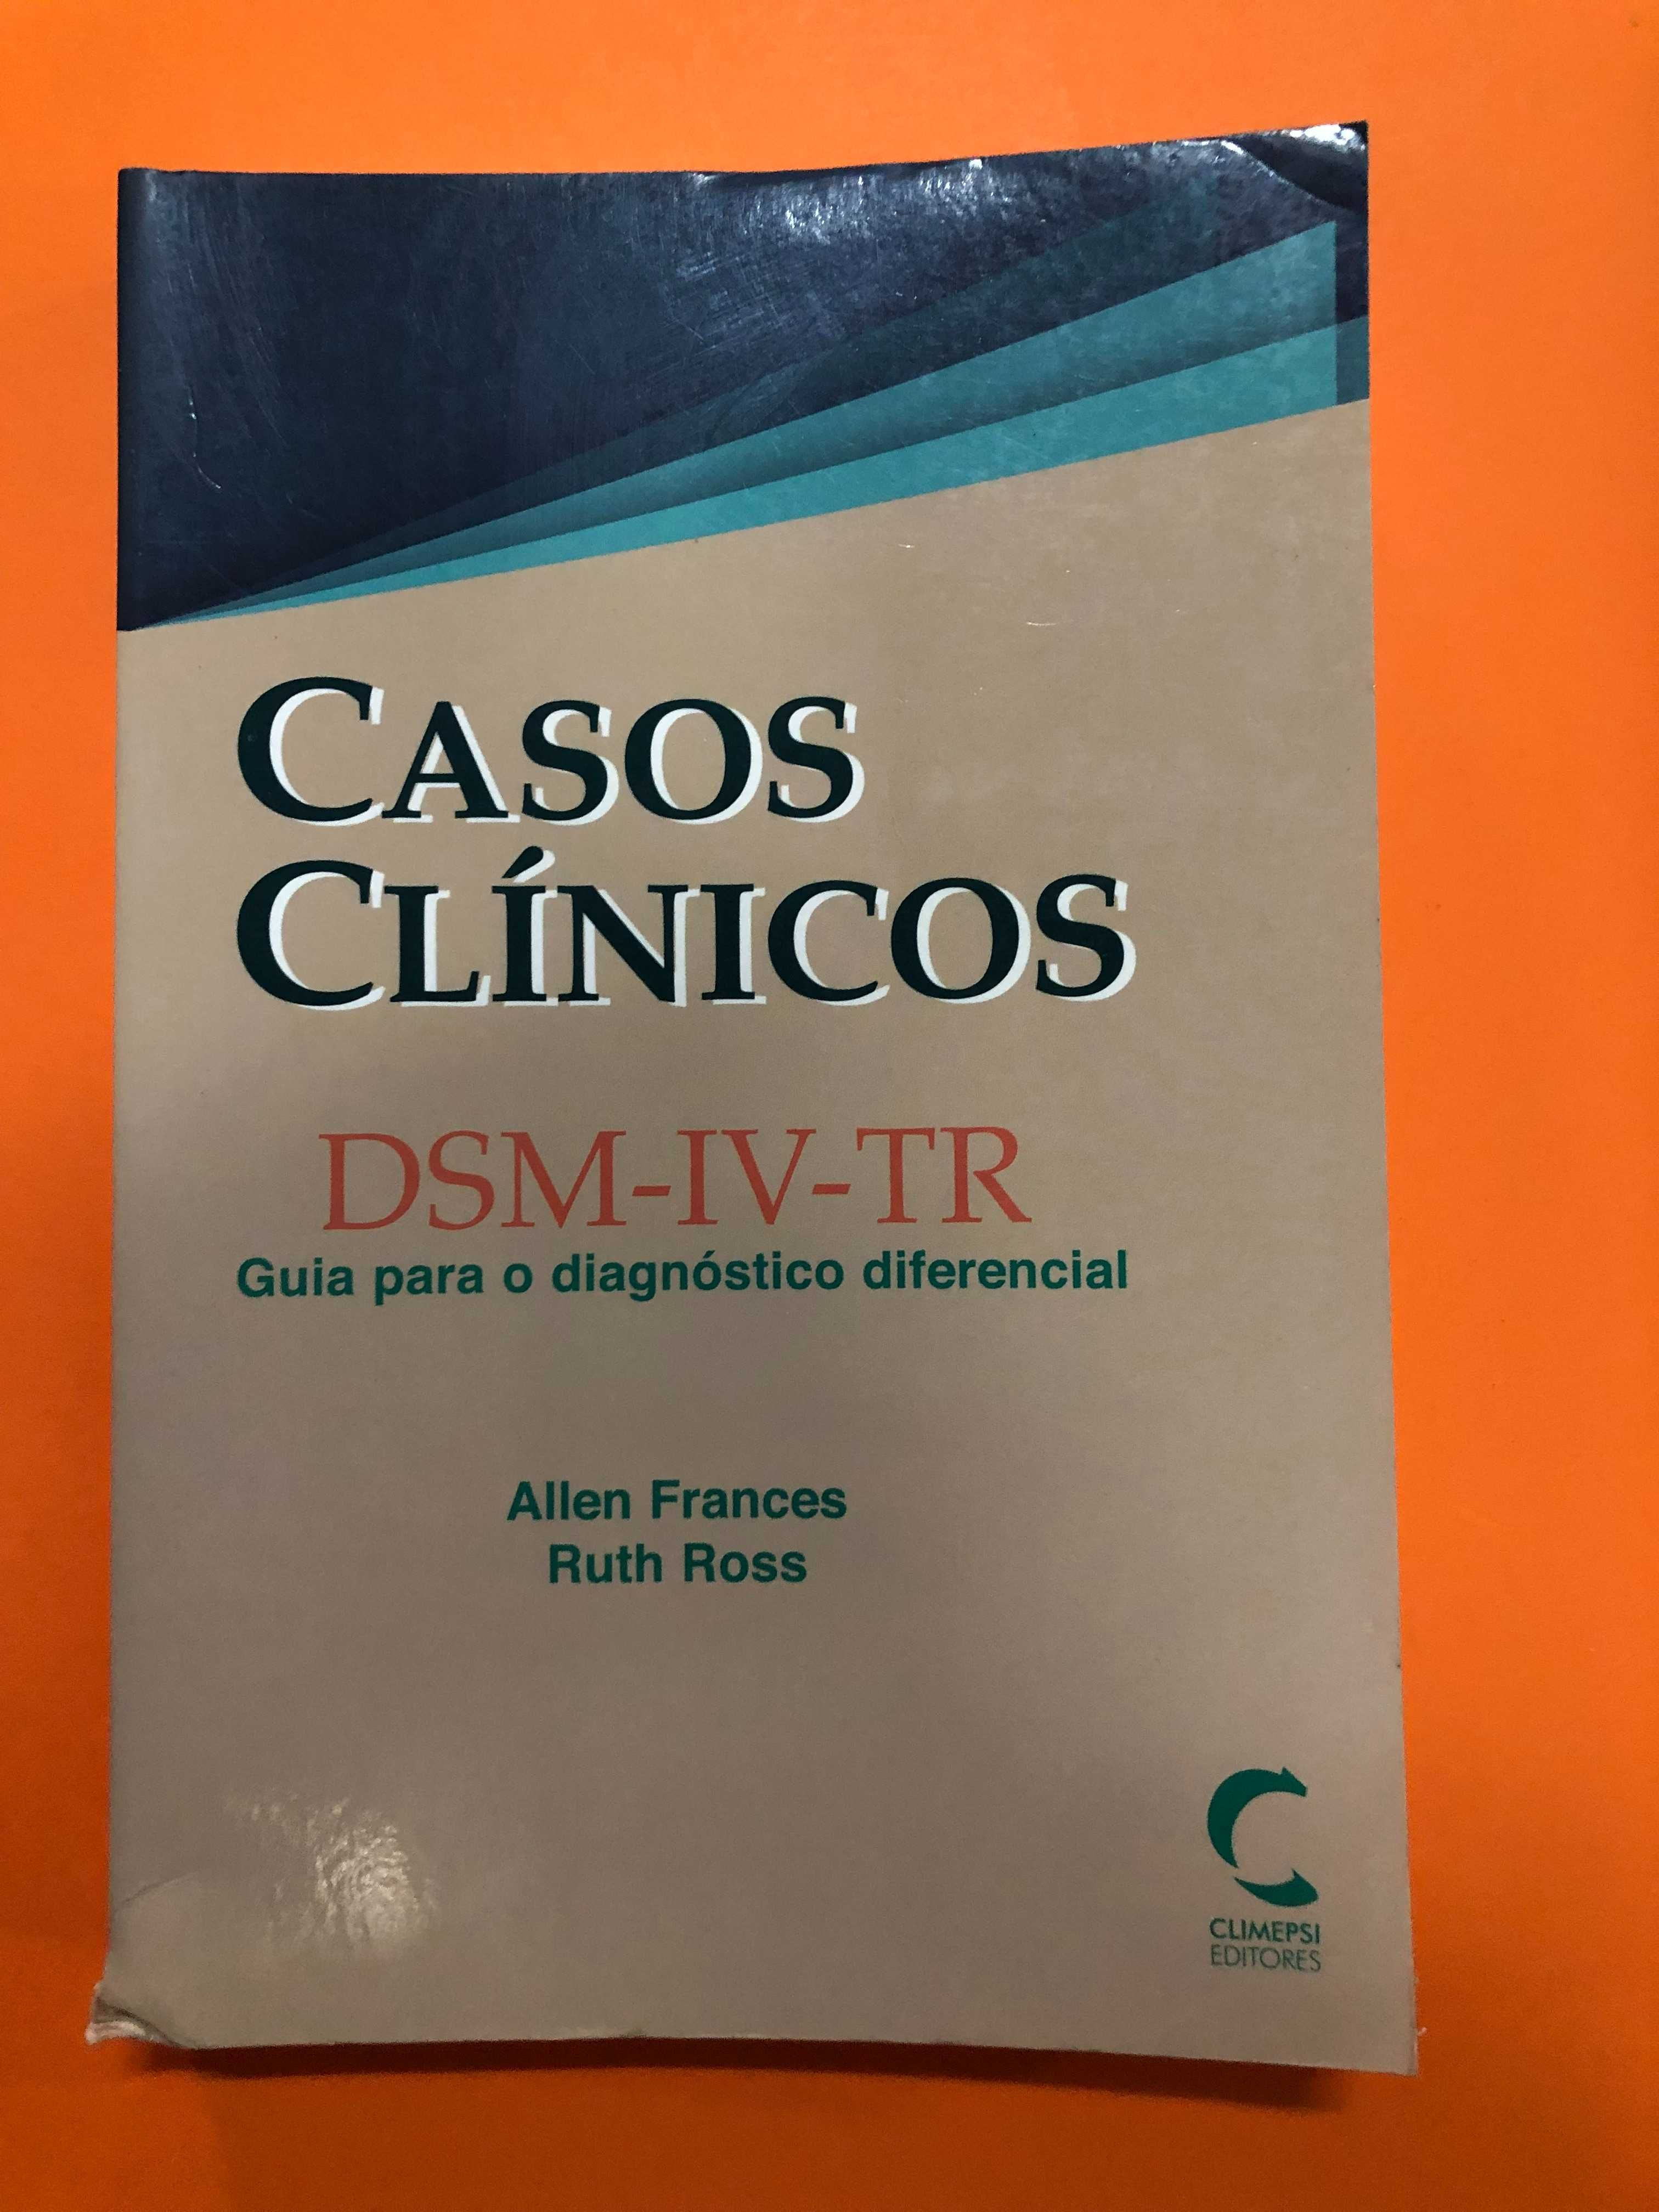 Casos clínicos DSM-IV-TR – Allen Frances, Ruth Ross